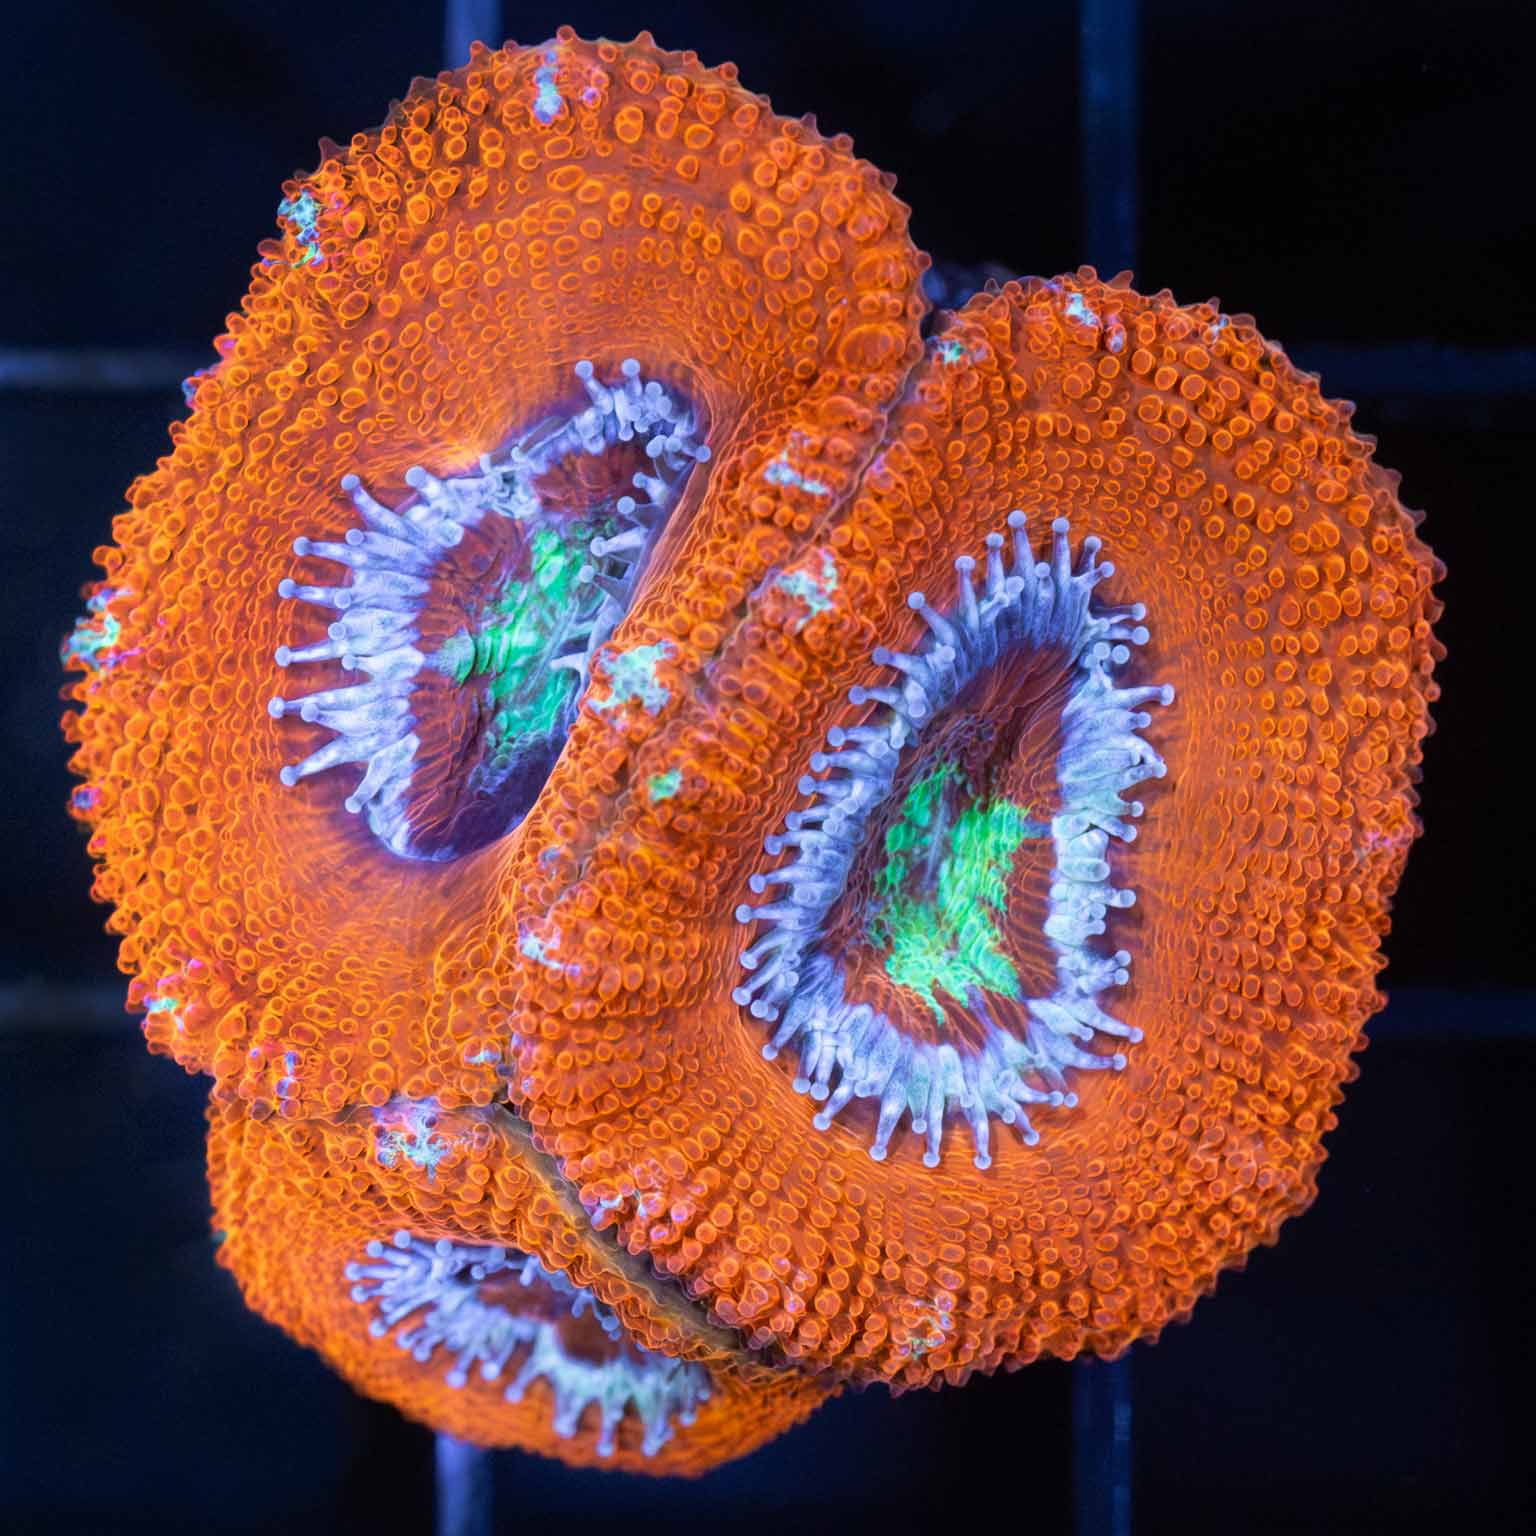 Asian Acan Coral (3 Polyps)